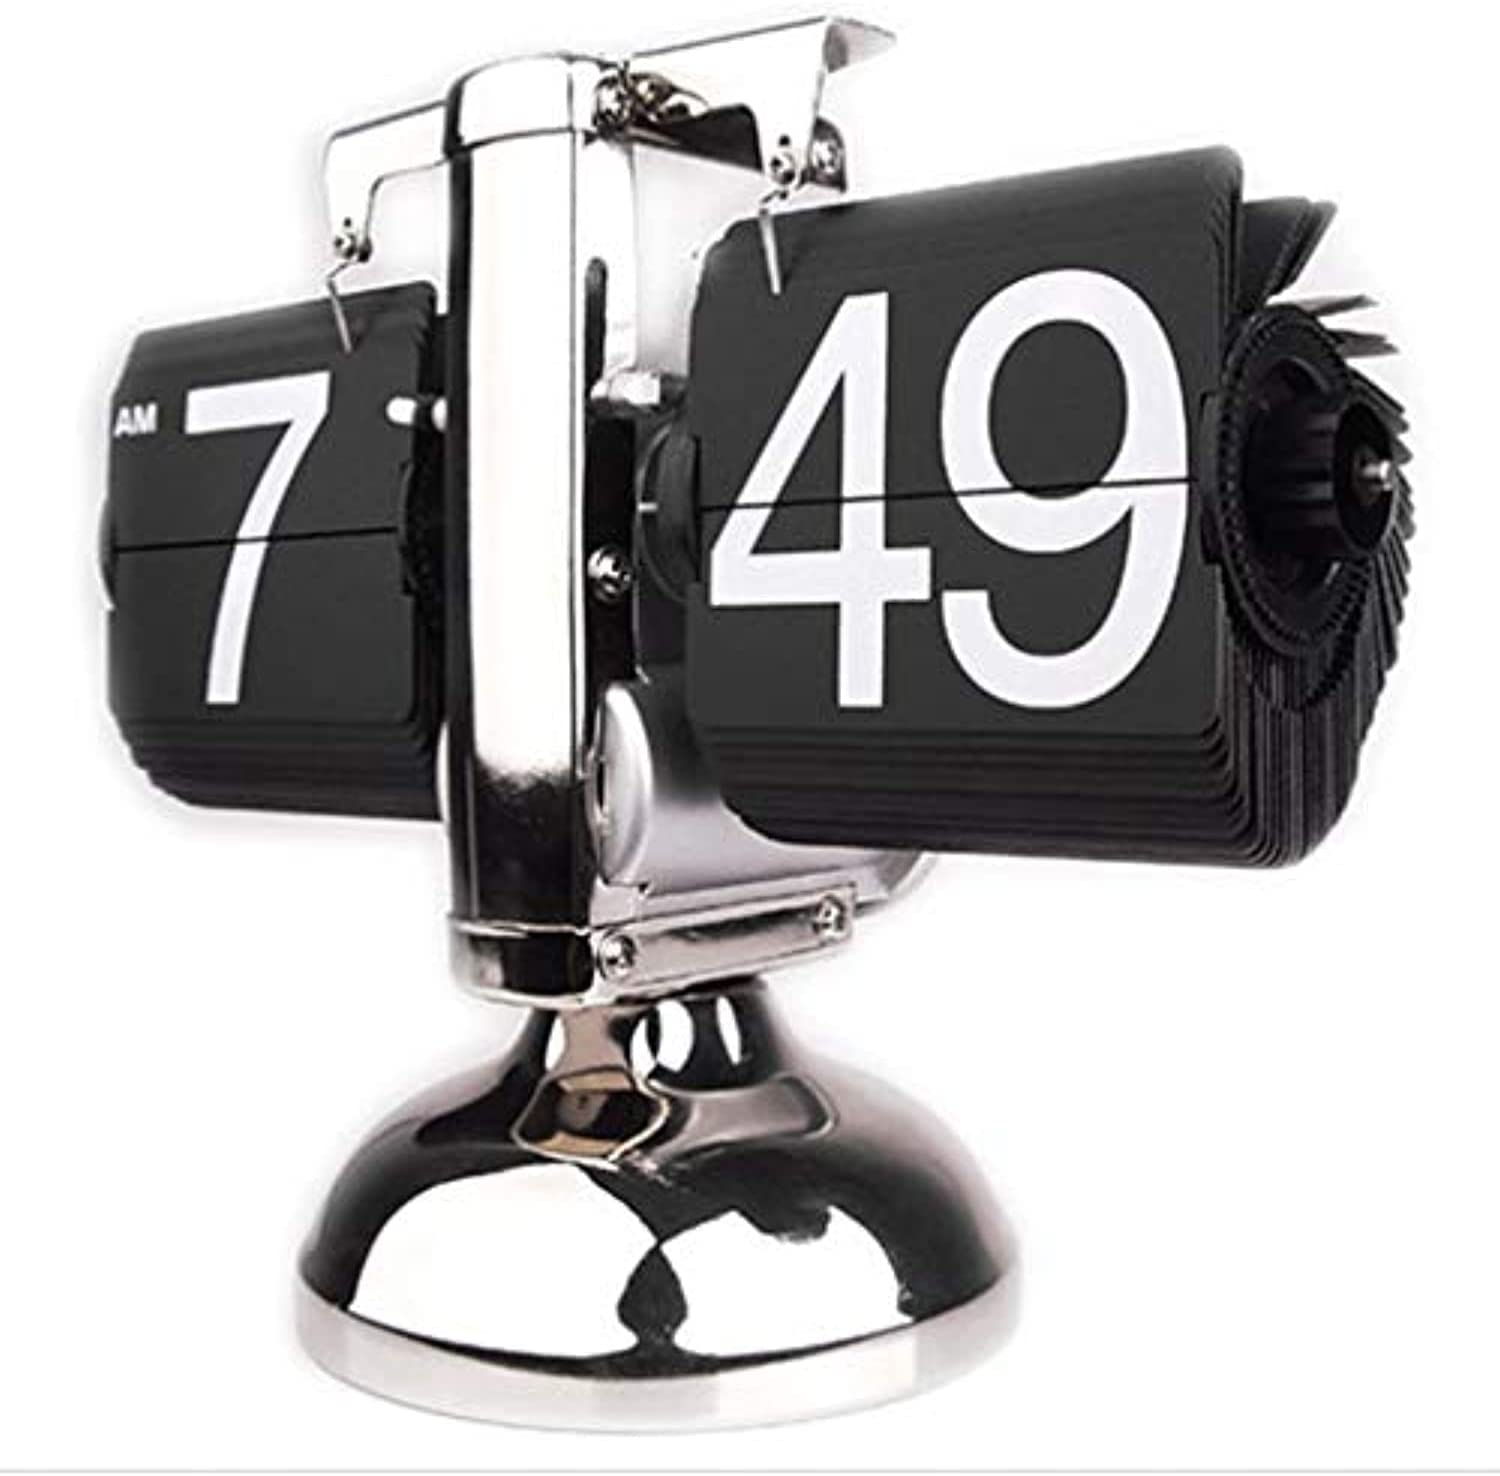 ساعت رومیزی مدل Flip Desk